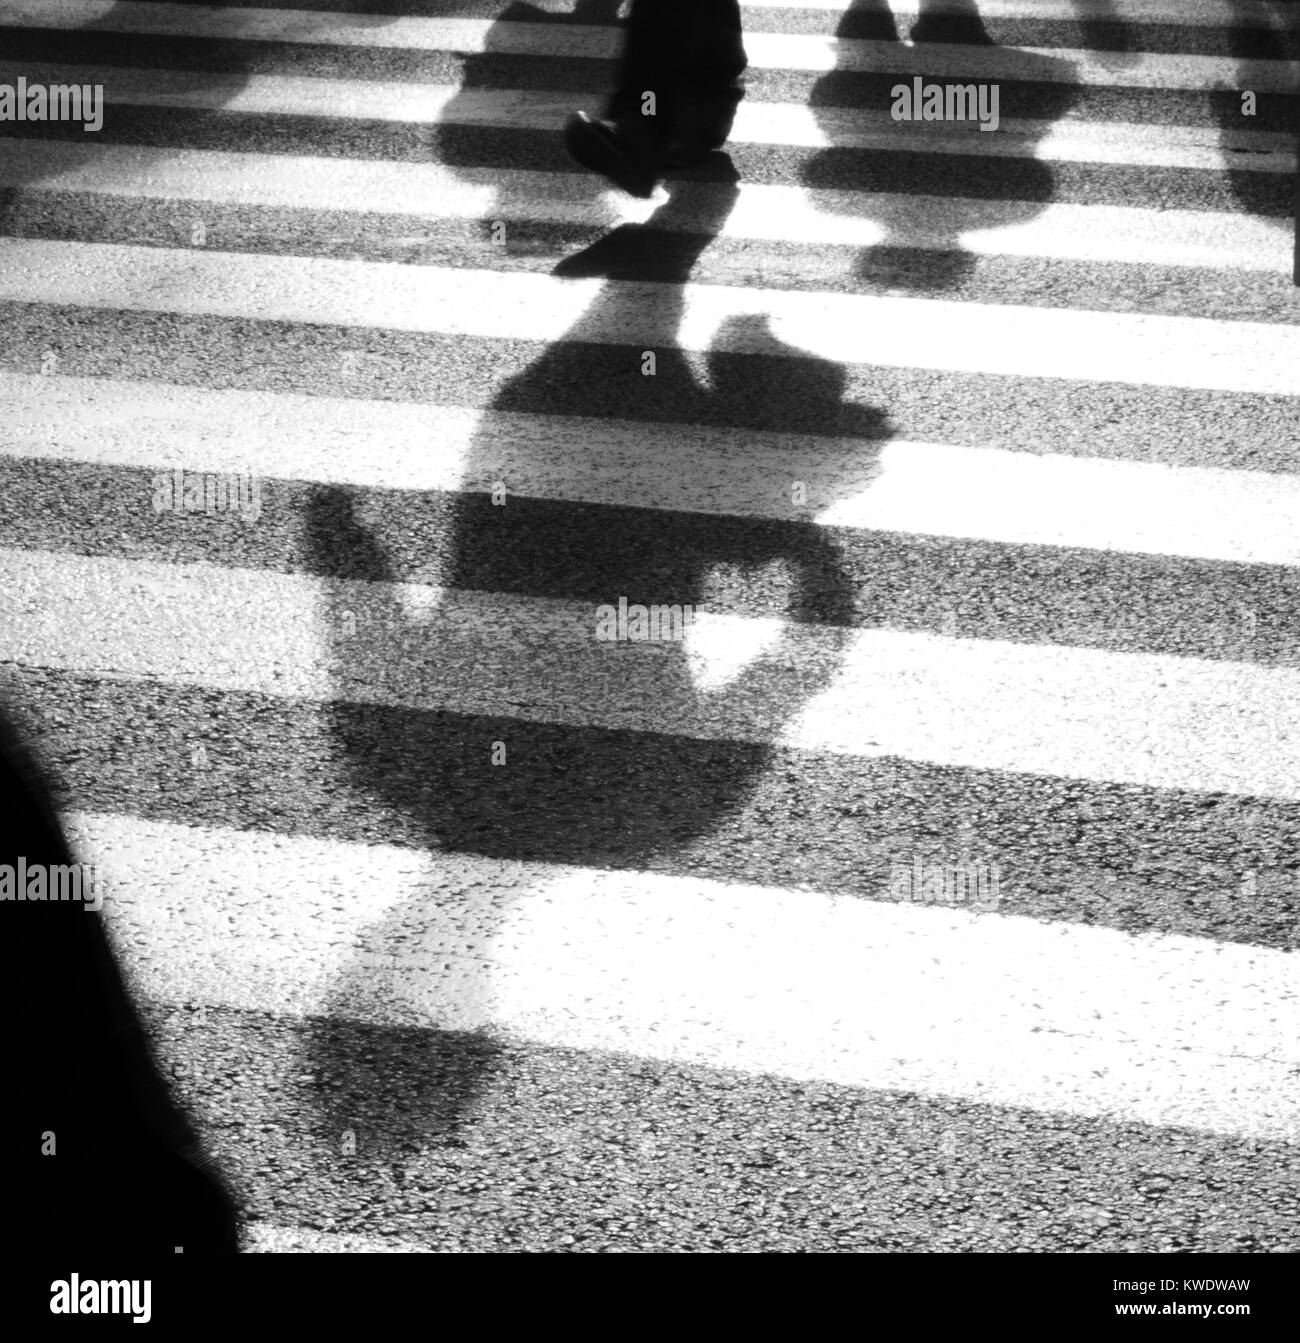 Ombre sfocati di pedoni che attraversano la strada a zebra bivio , in bianco e nero Foto Stock